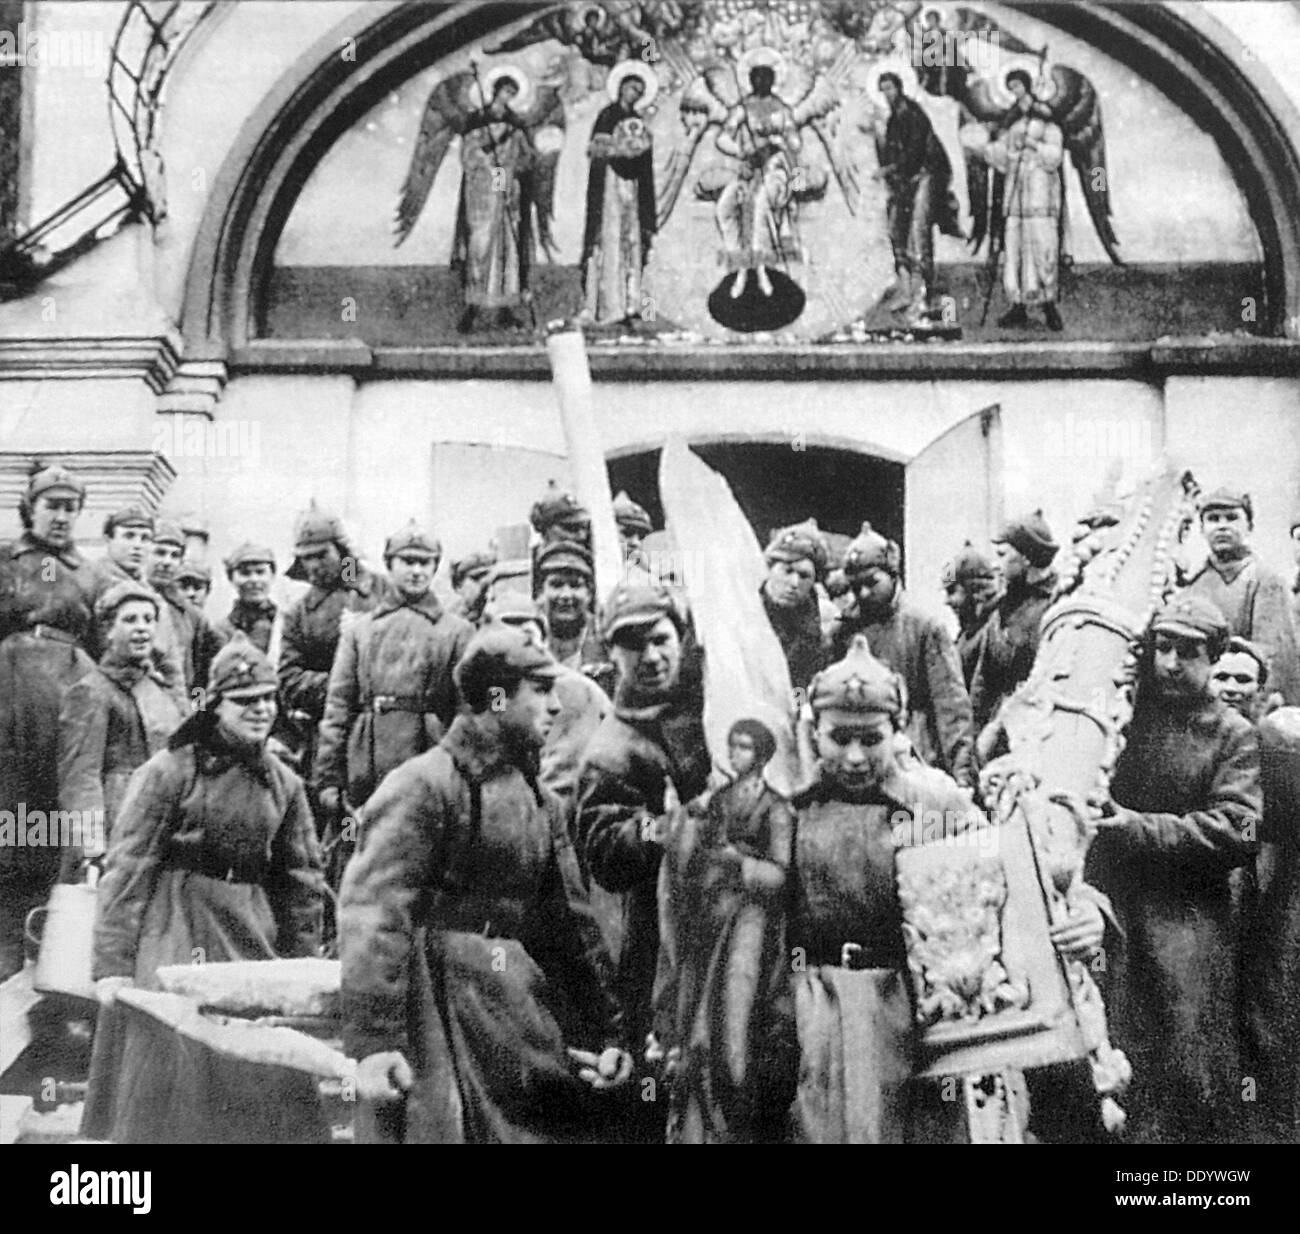 Los hombres del Ejército Rojo confiscar los tesoros de la iglesia del monasterio Simonov, Moscú, URSS, 1925. Artista: Anon Foto de stock